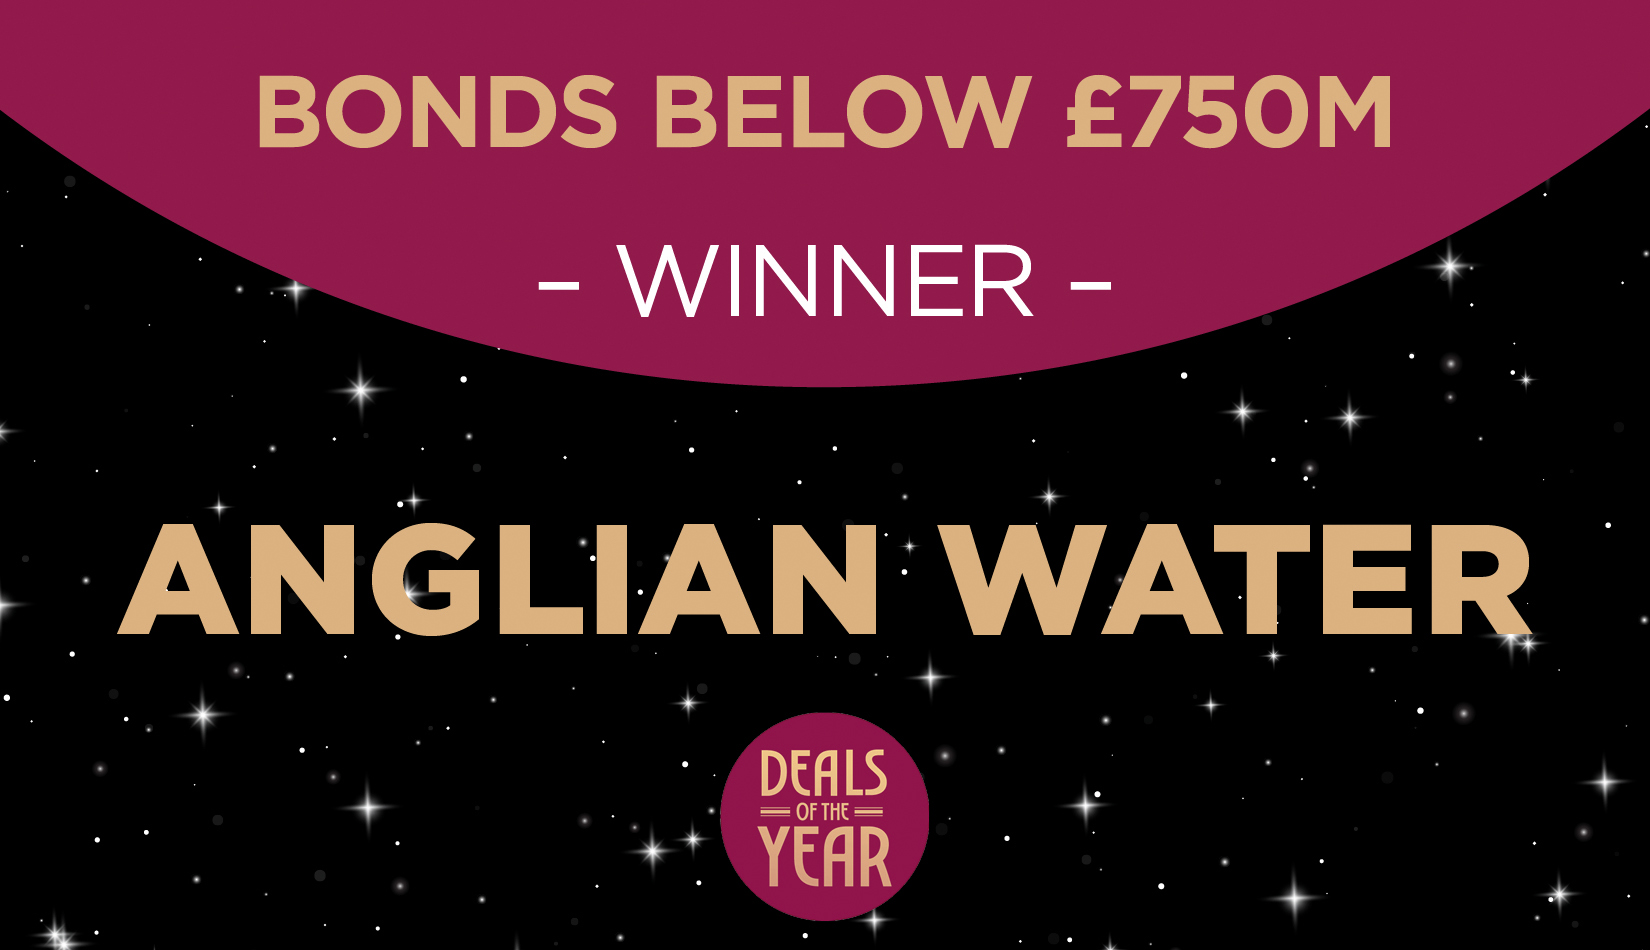 Bonds below £750m winner - Anglian Water